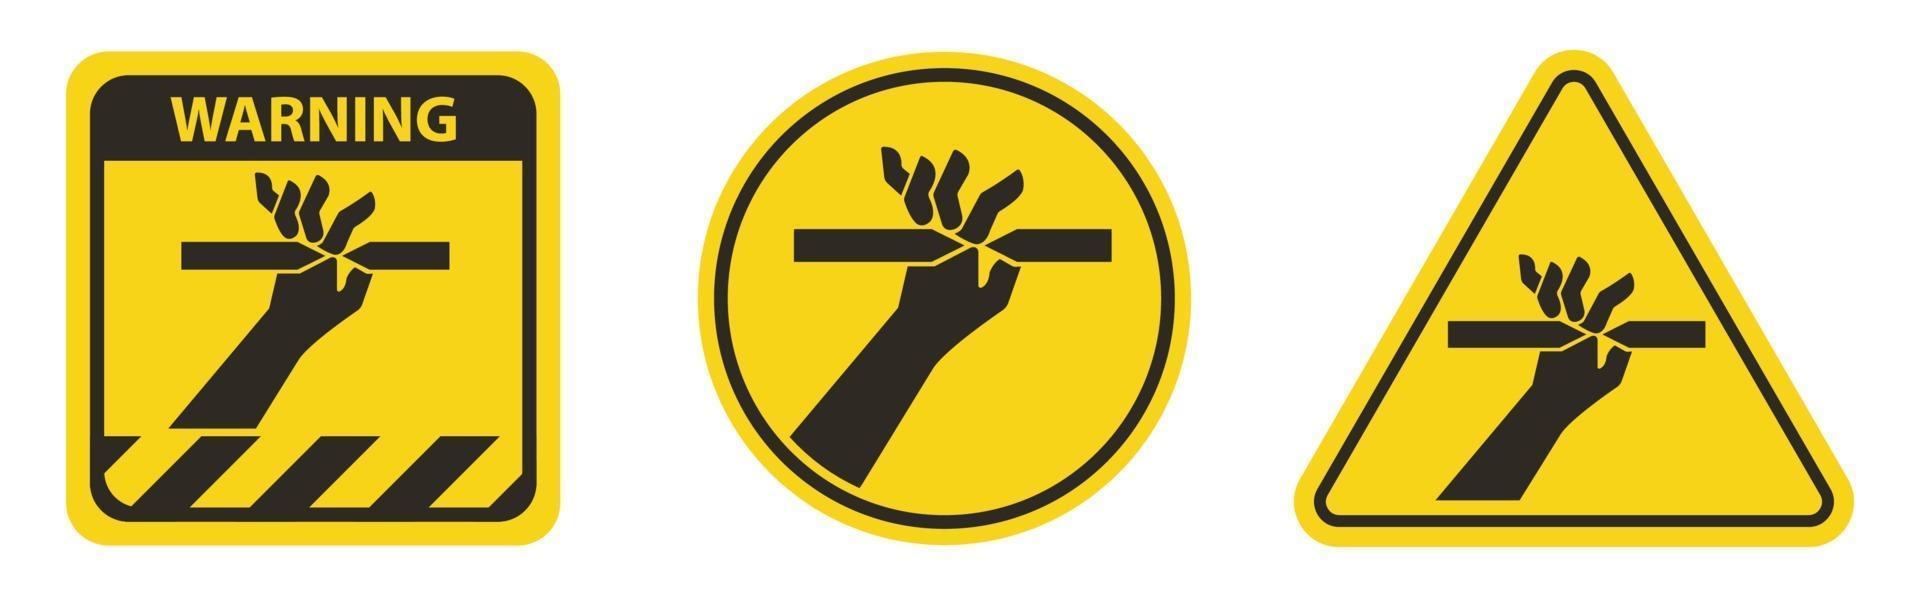 taglio delle dita simbolo segno su sfondo bianco vettore